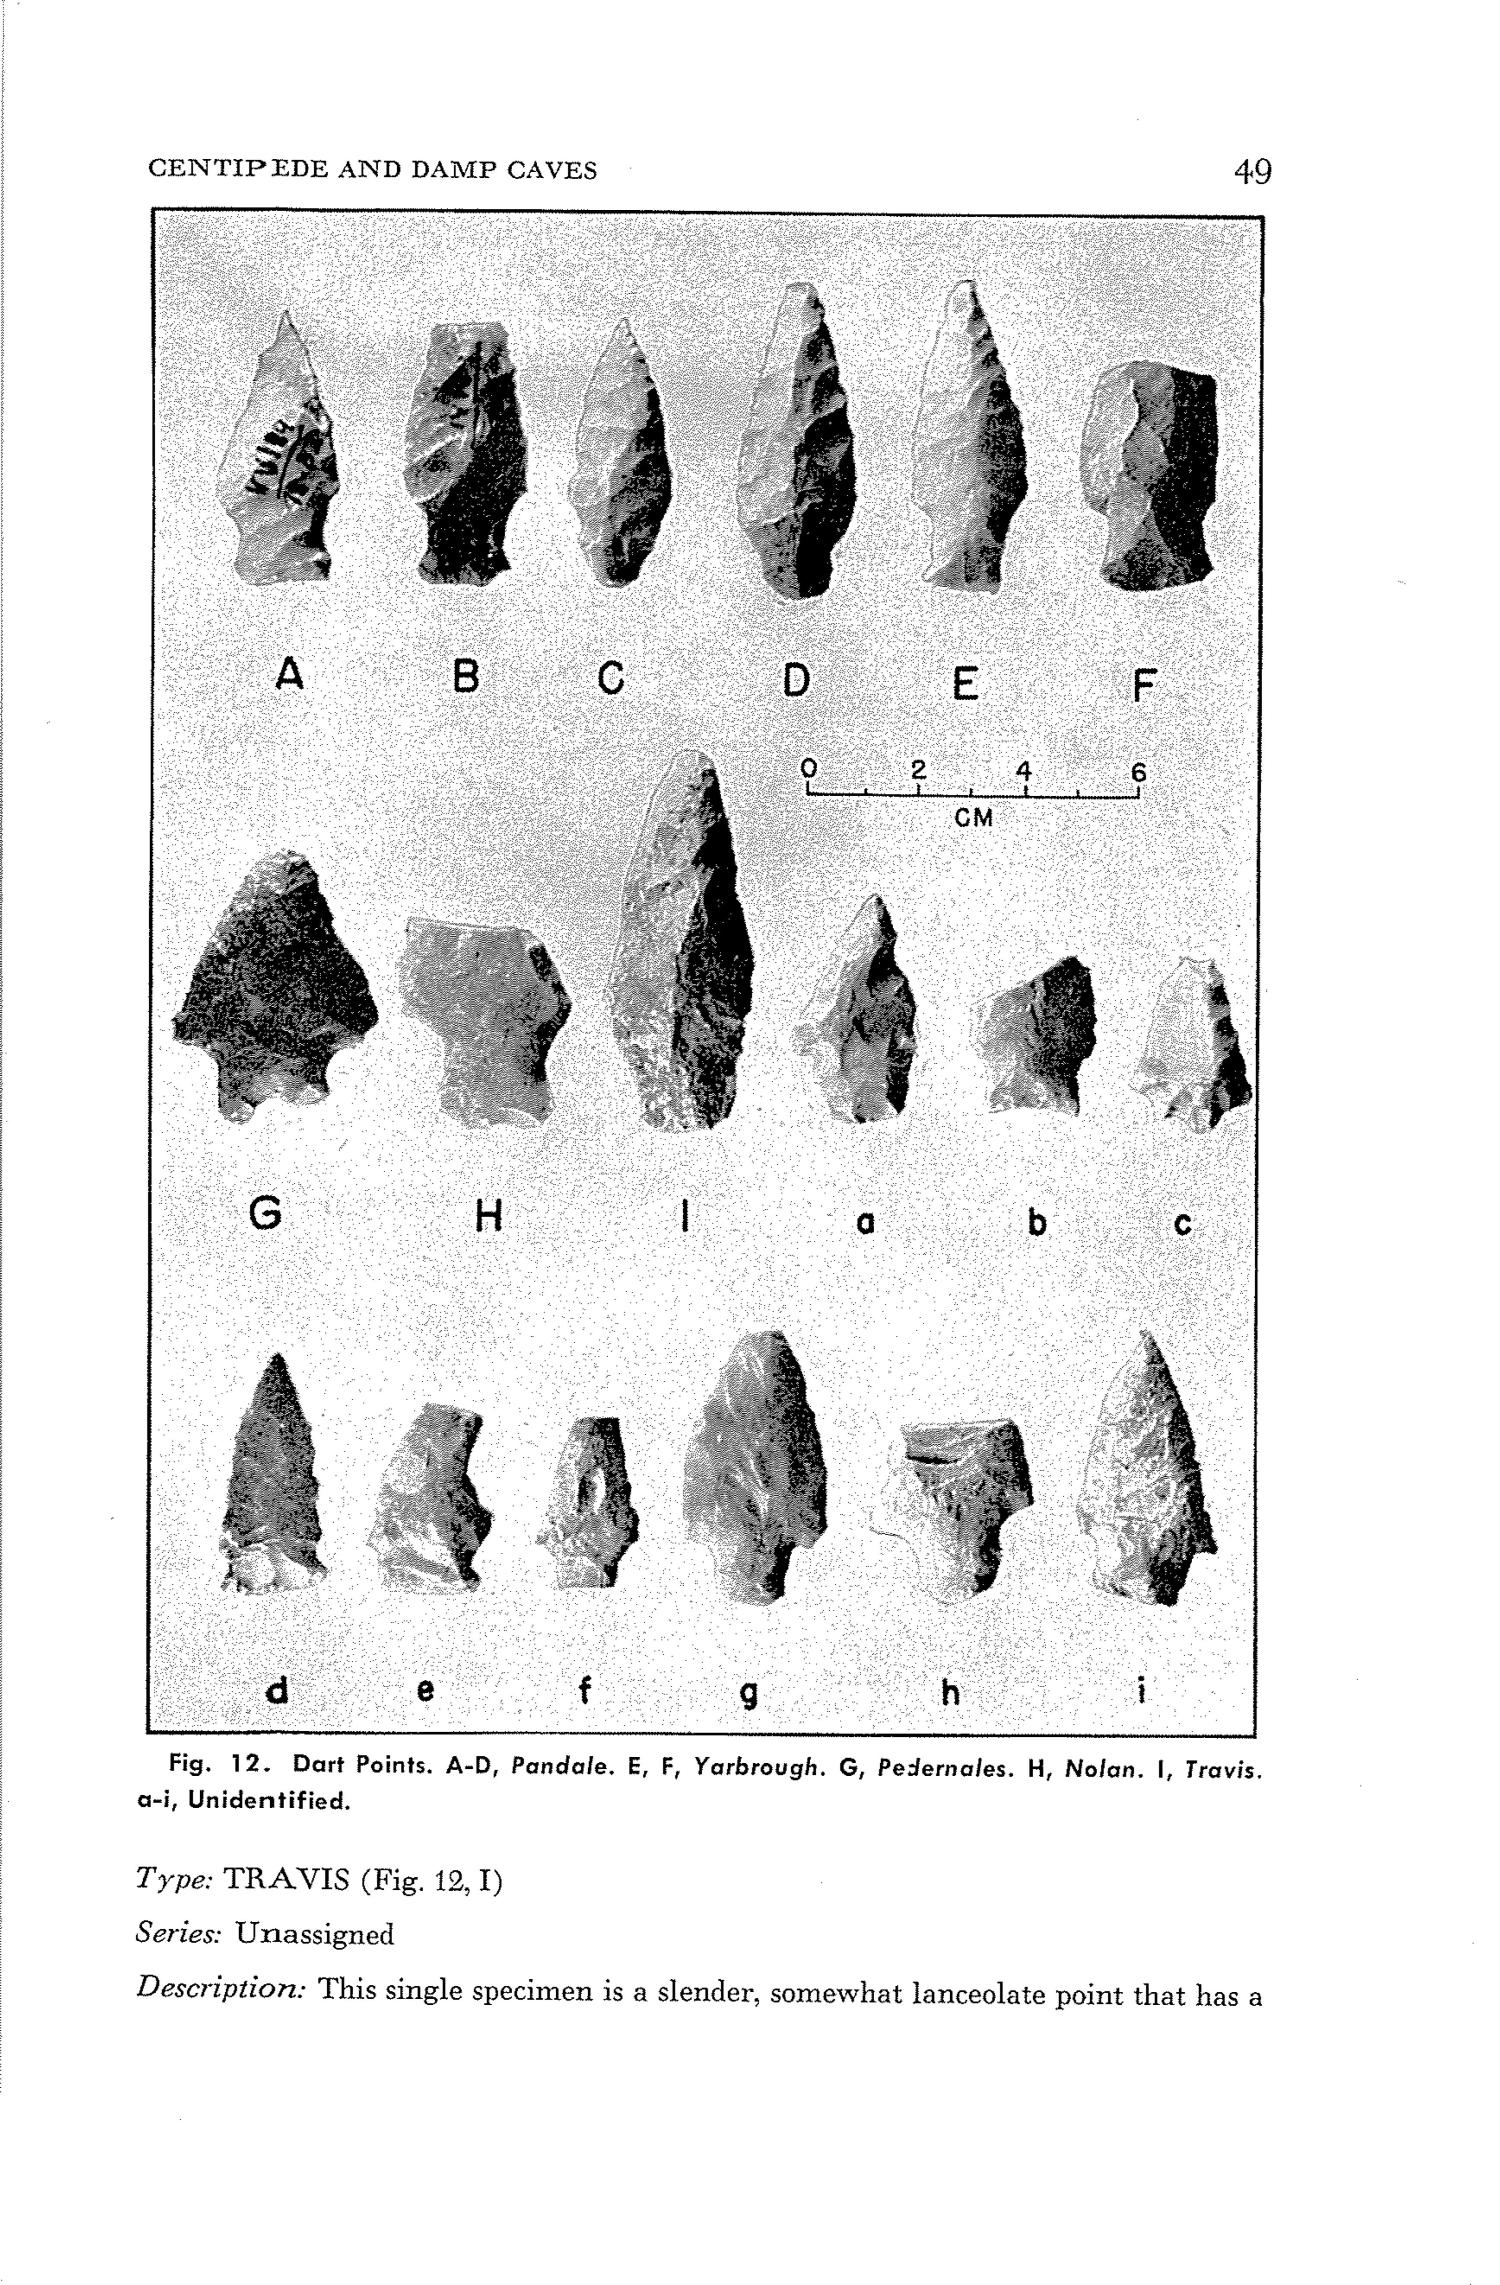 Bulletin of the Texas Archeological Society, Volume 33, 1962
                                                
                                                    51
                                                